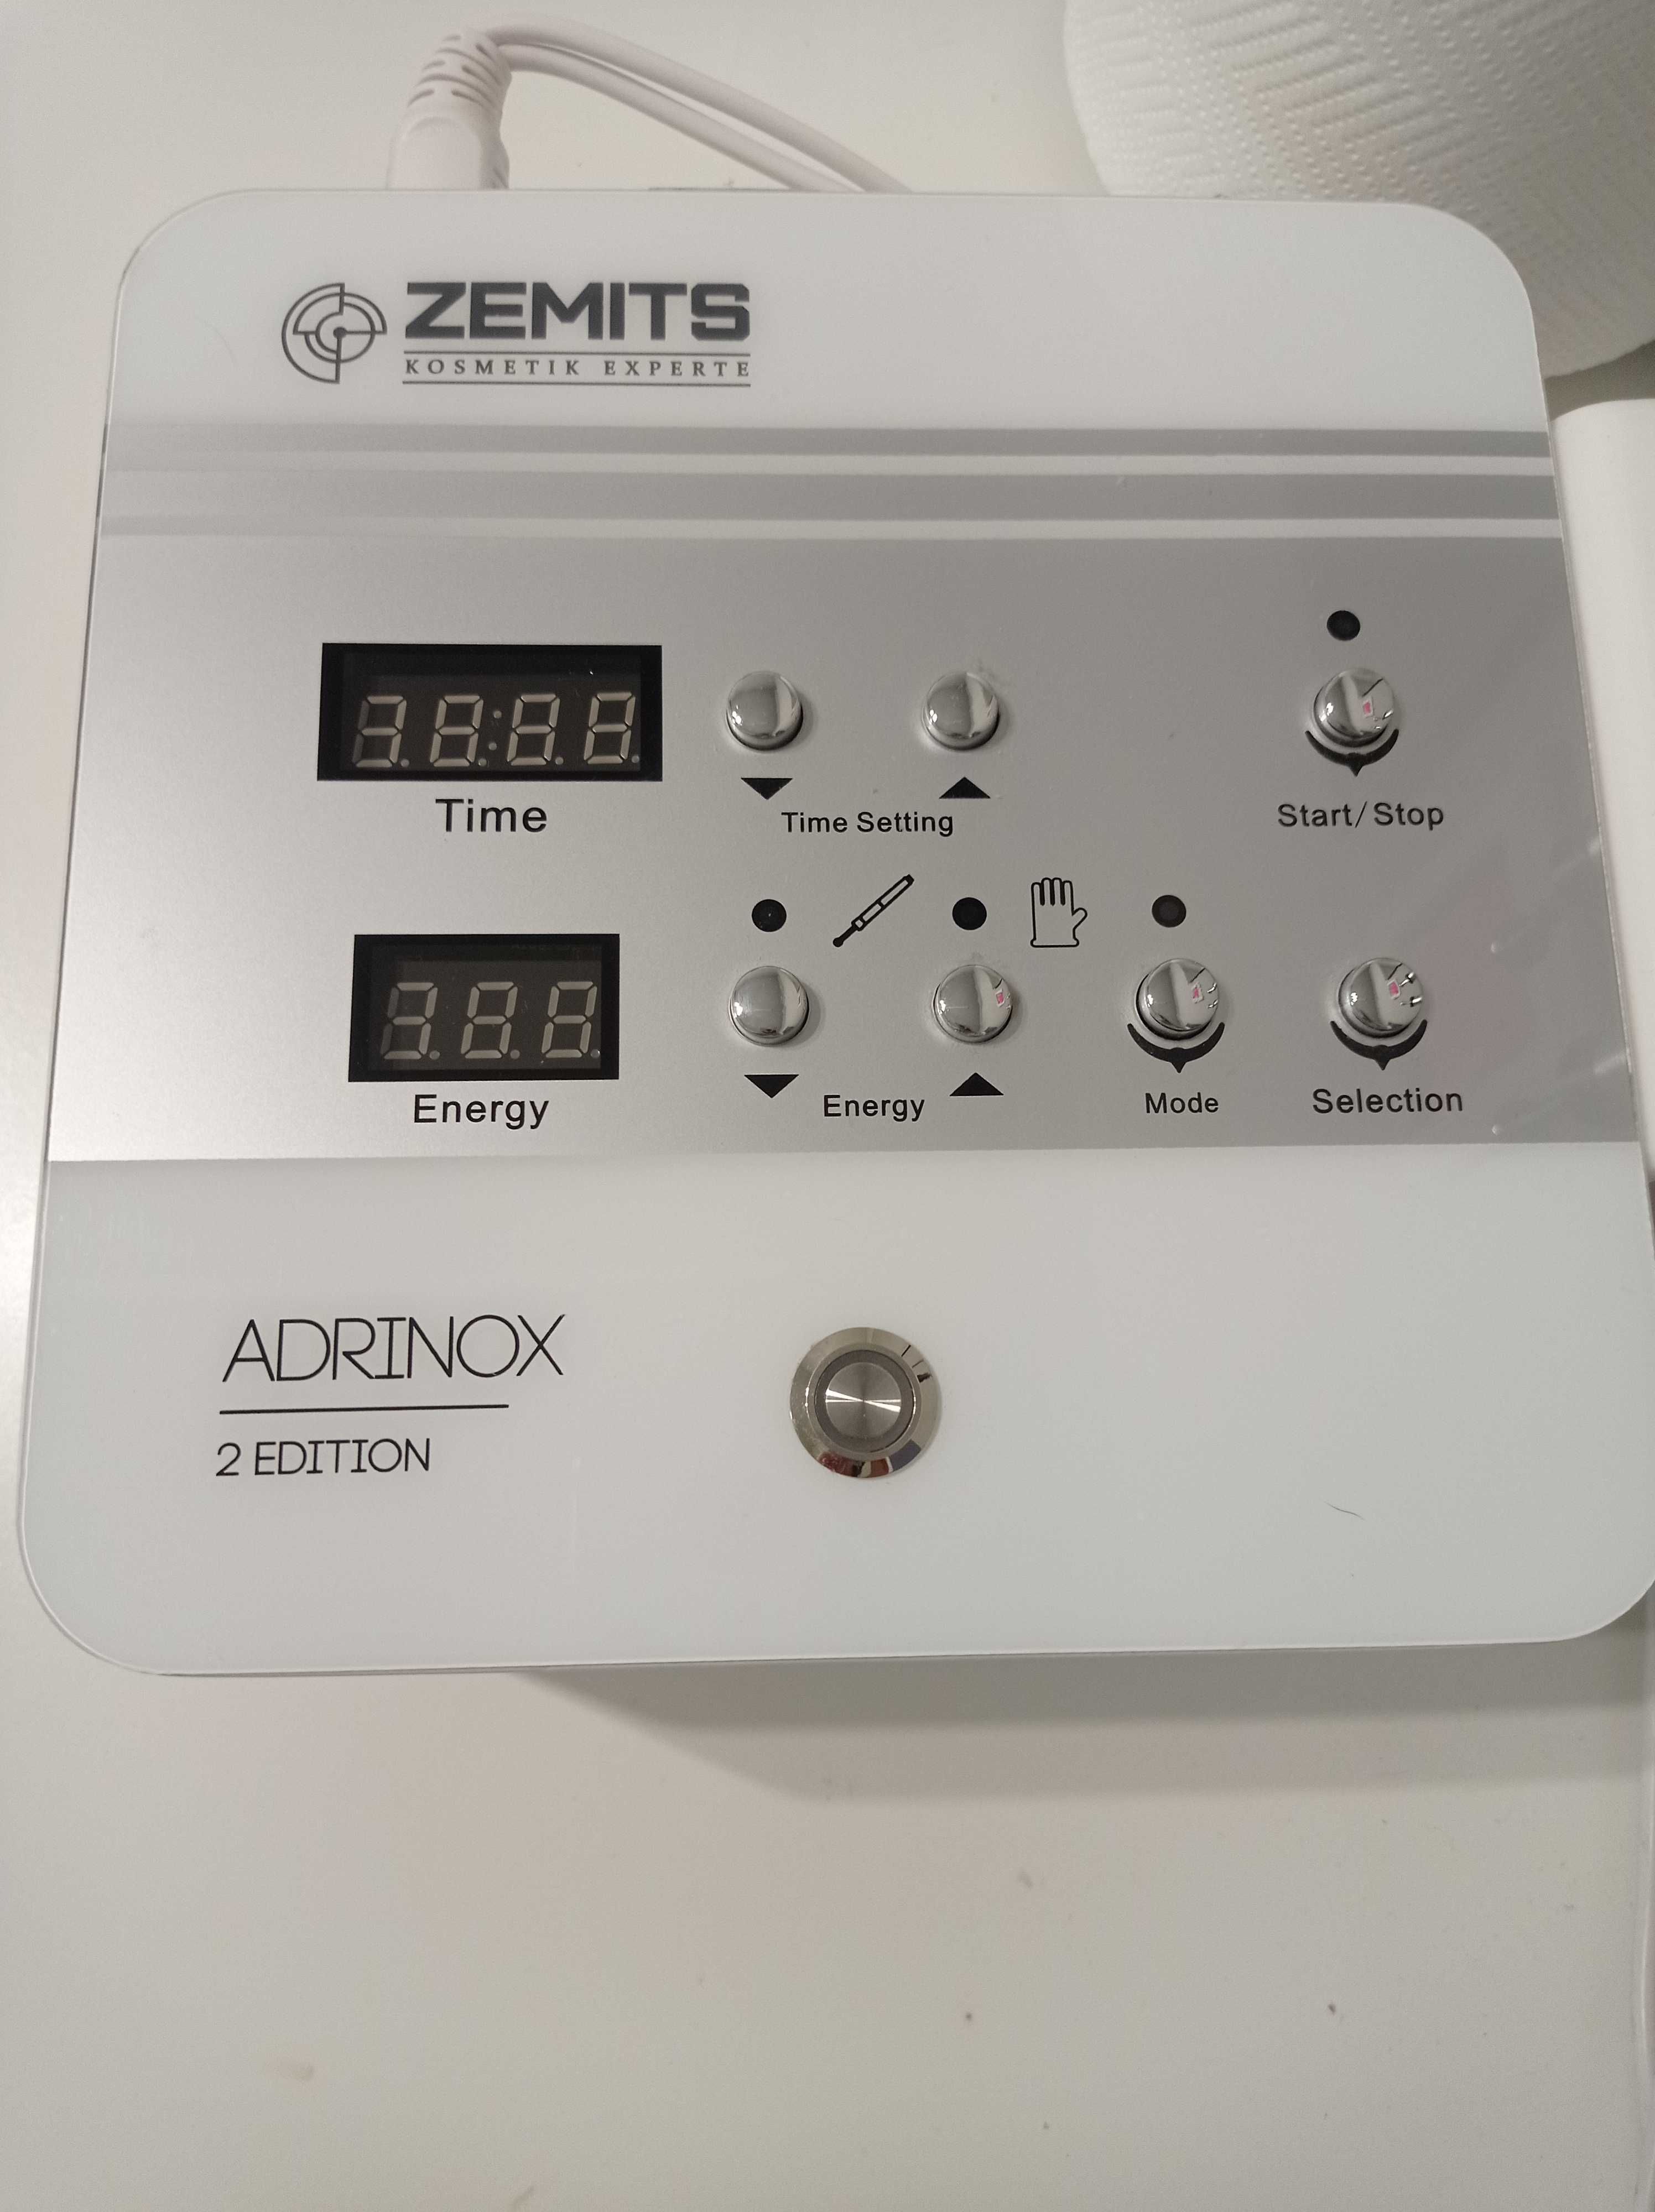 Zemits Adrinox biolifting mikroprady urządzenie